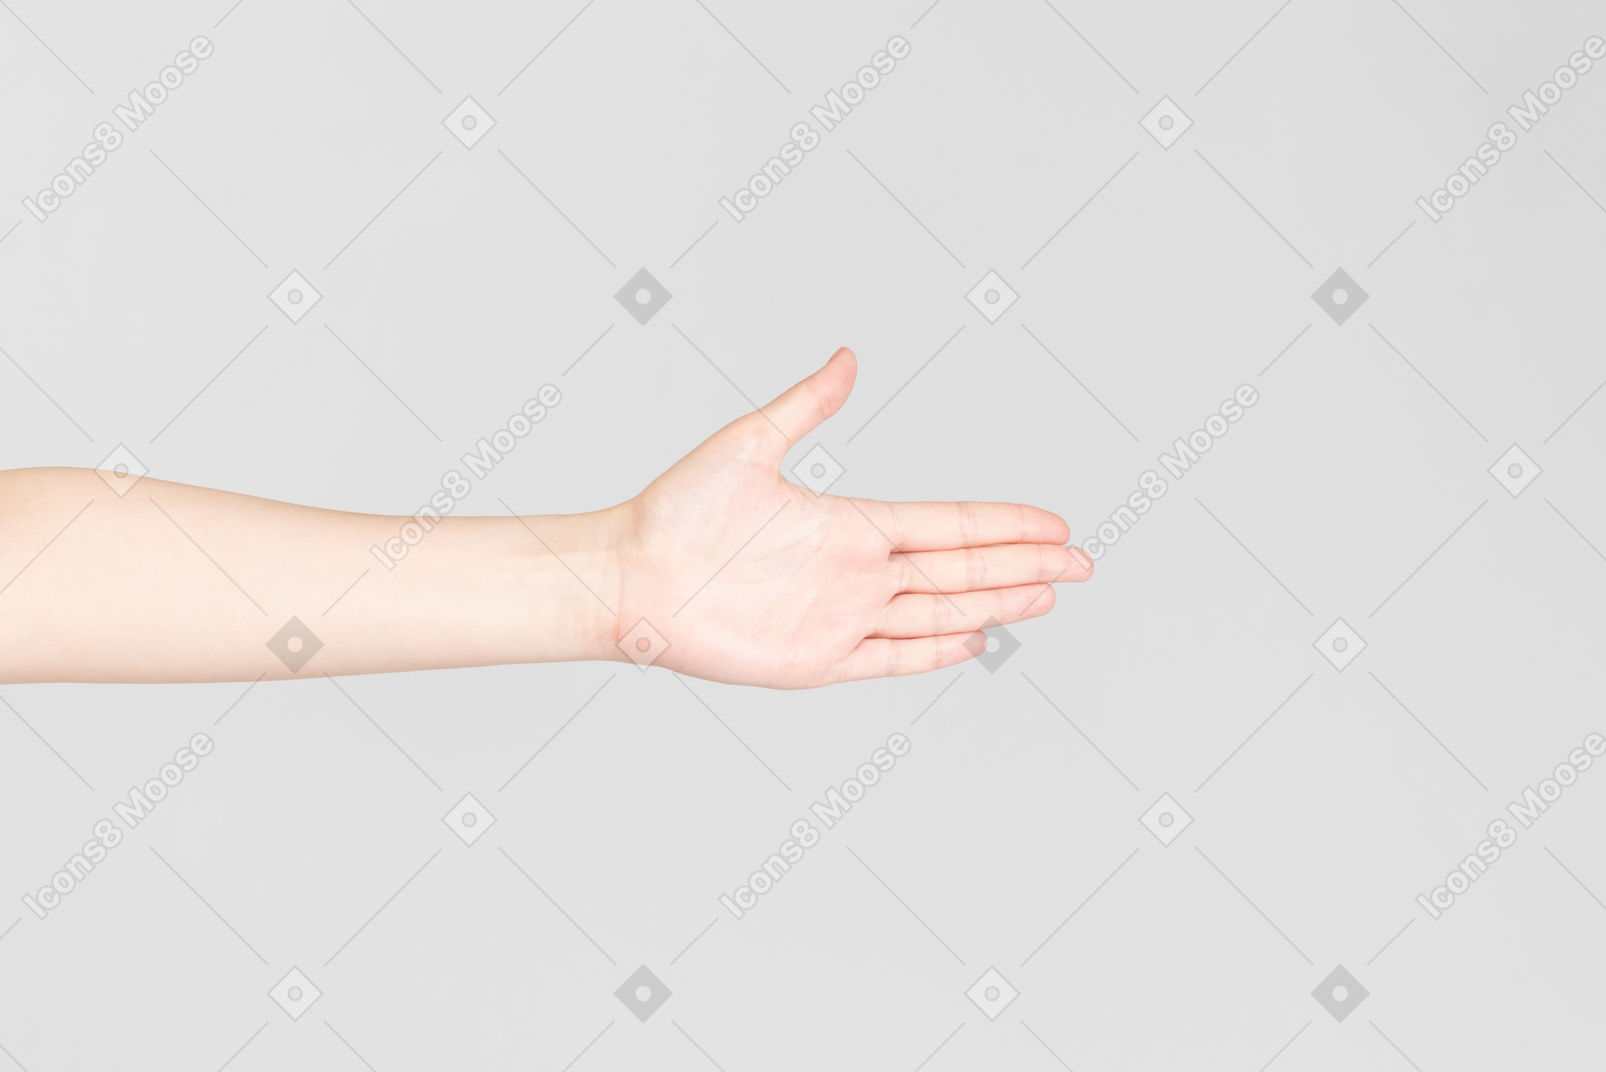 여성 손 손바닥의 측면 모습